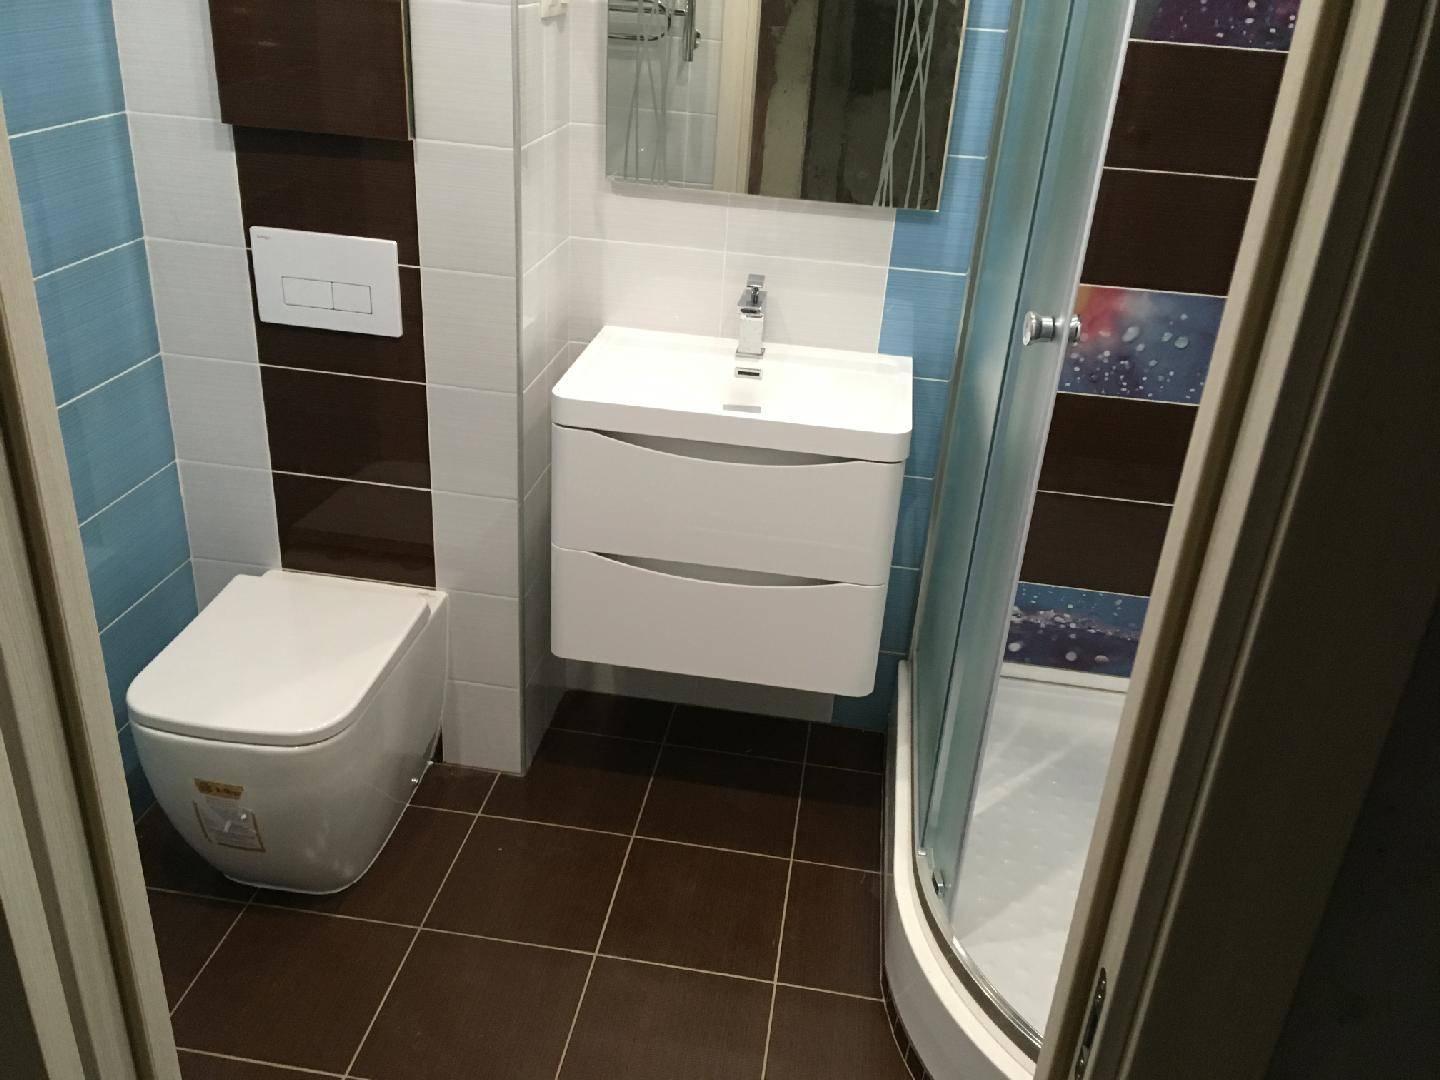 Ремонт ванной комнаты — порядок работ, этапы